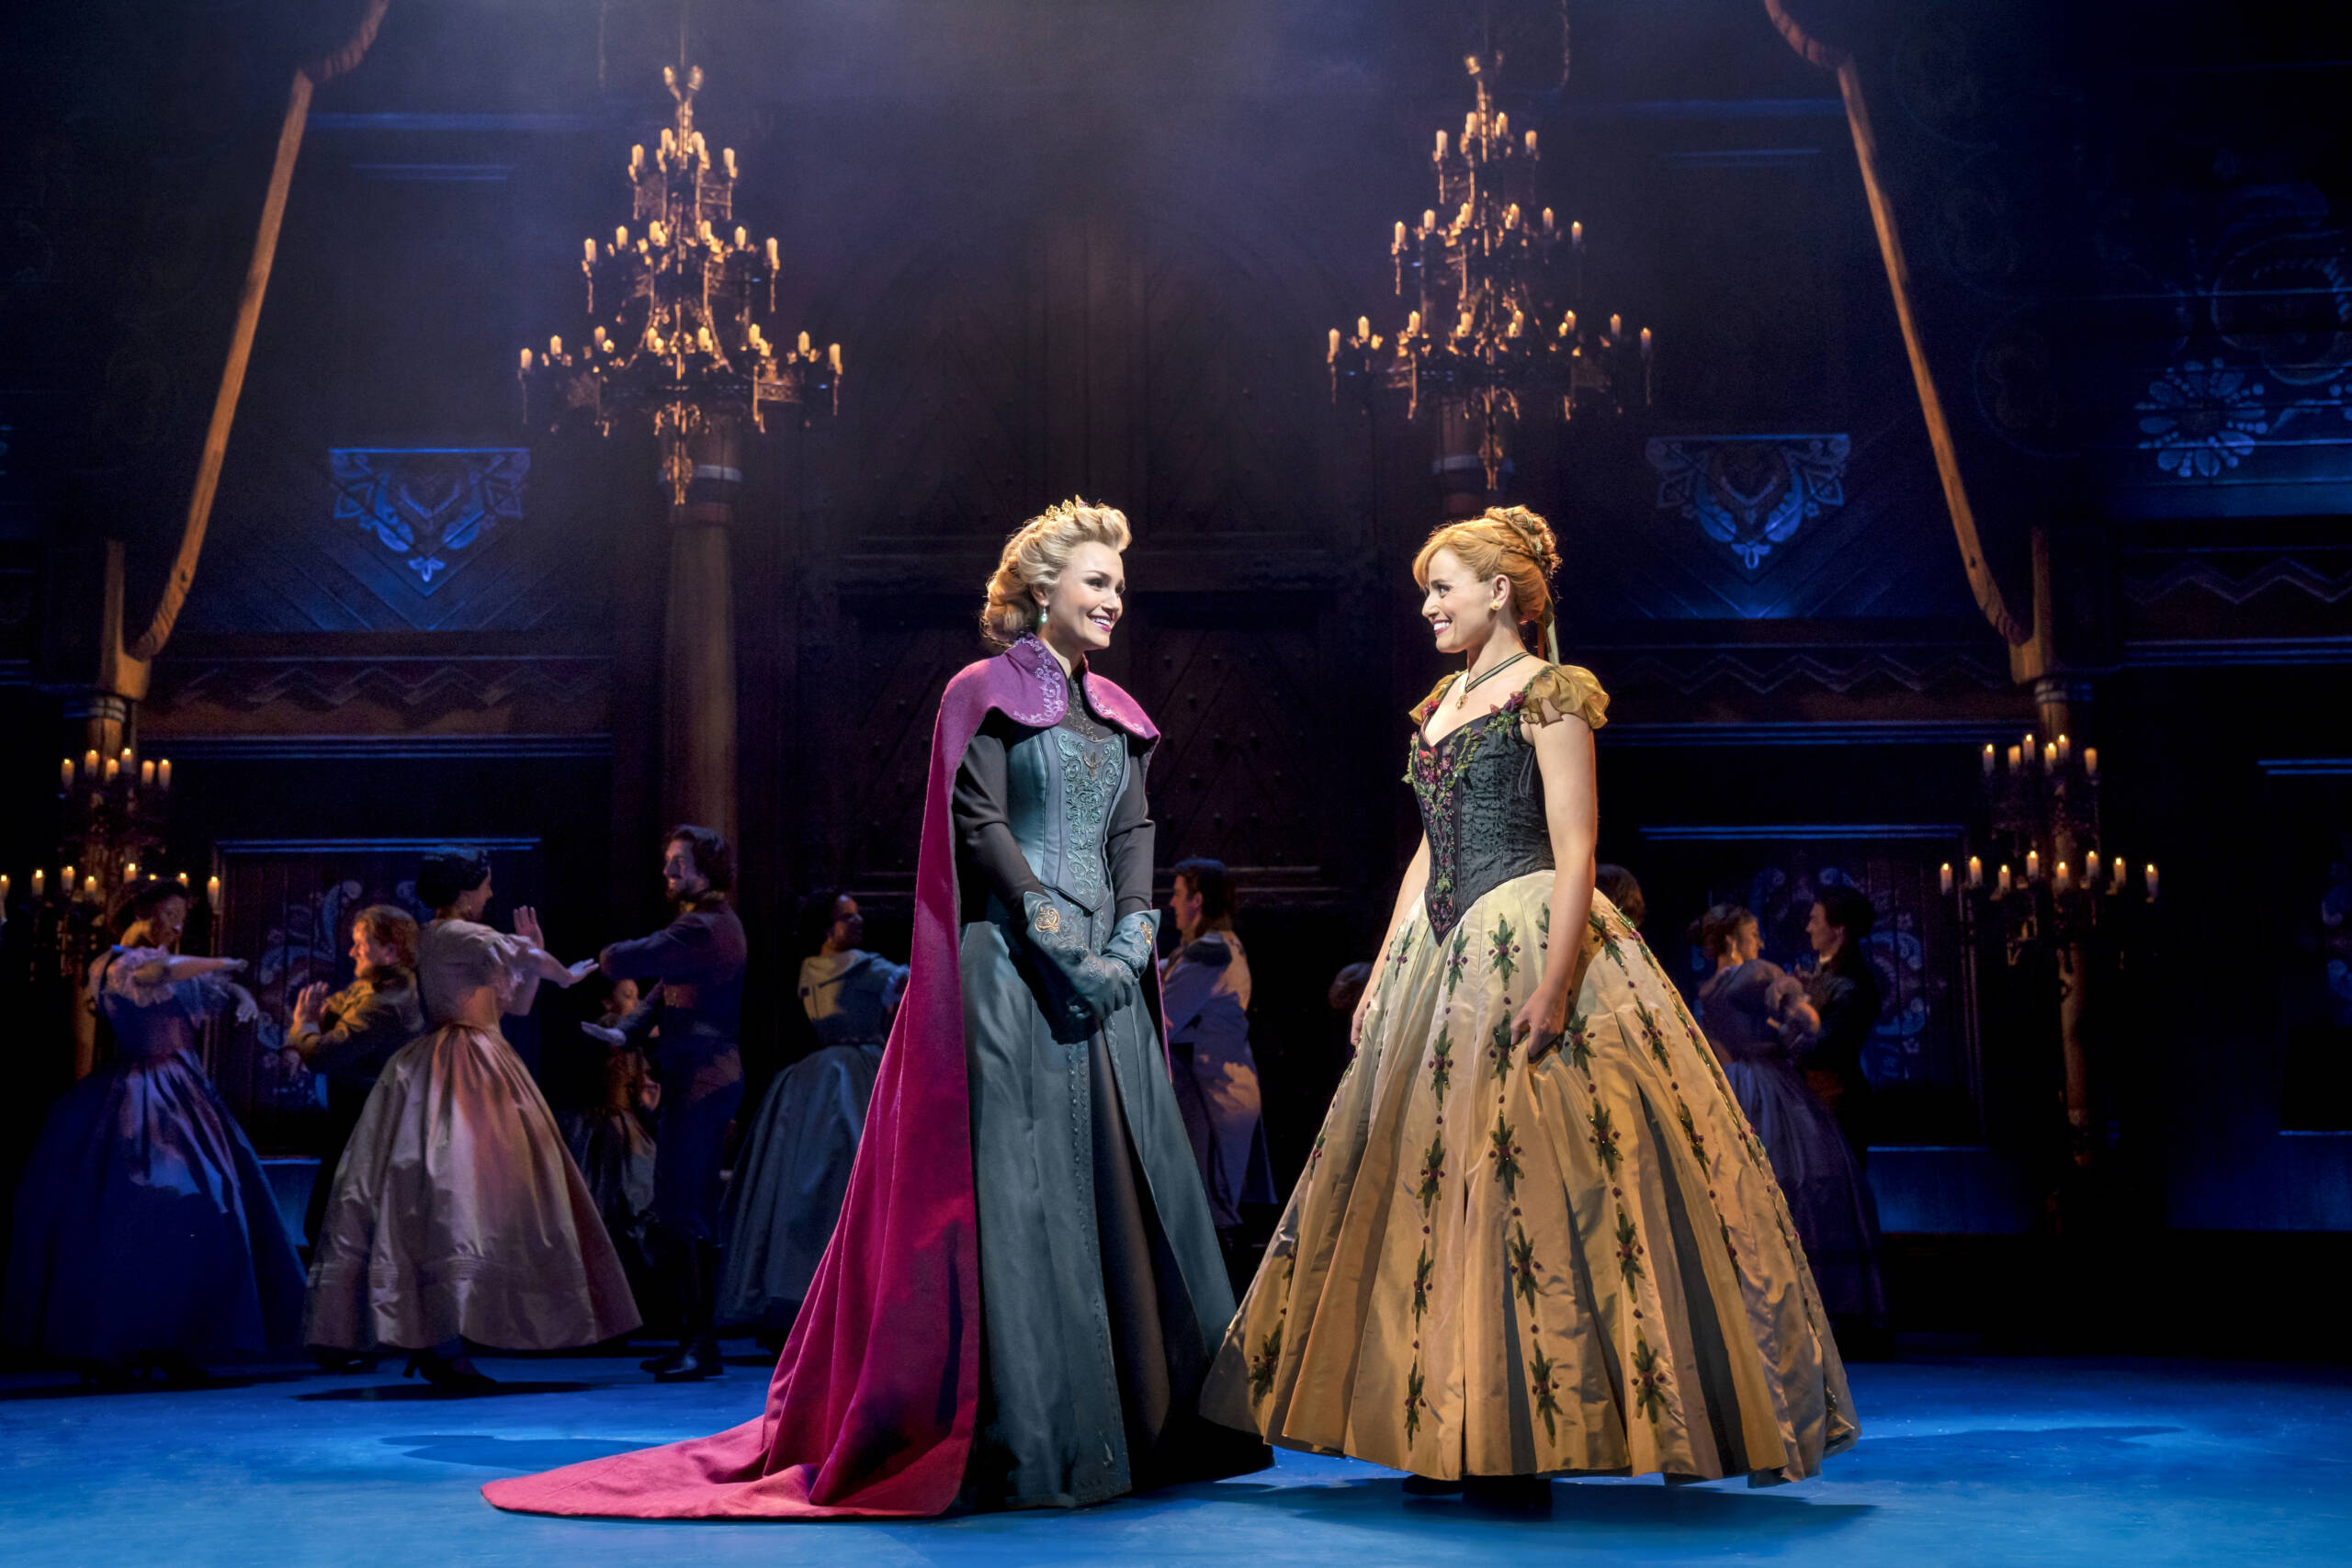 De poorten zijn officieel geopend - Frozen The Musical opent met lovende recensies | LW Theaters